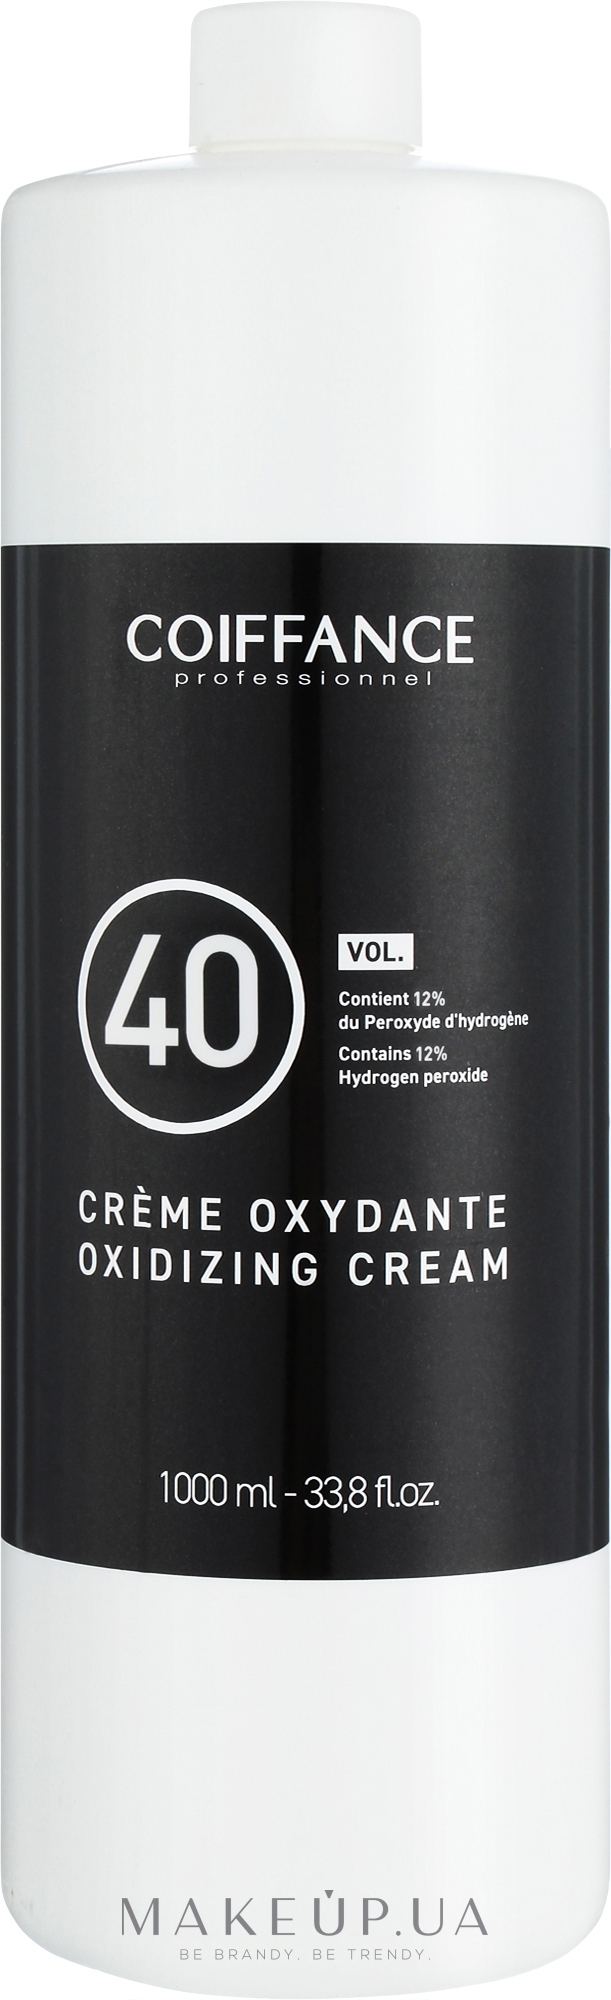 Крем-оксидант 12 % - Coiffance Oxidizing Cream 40 VOL — фото 1000ml